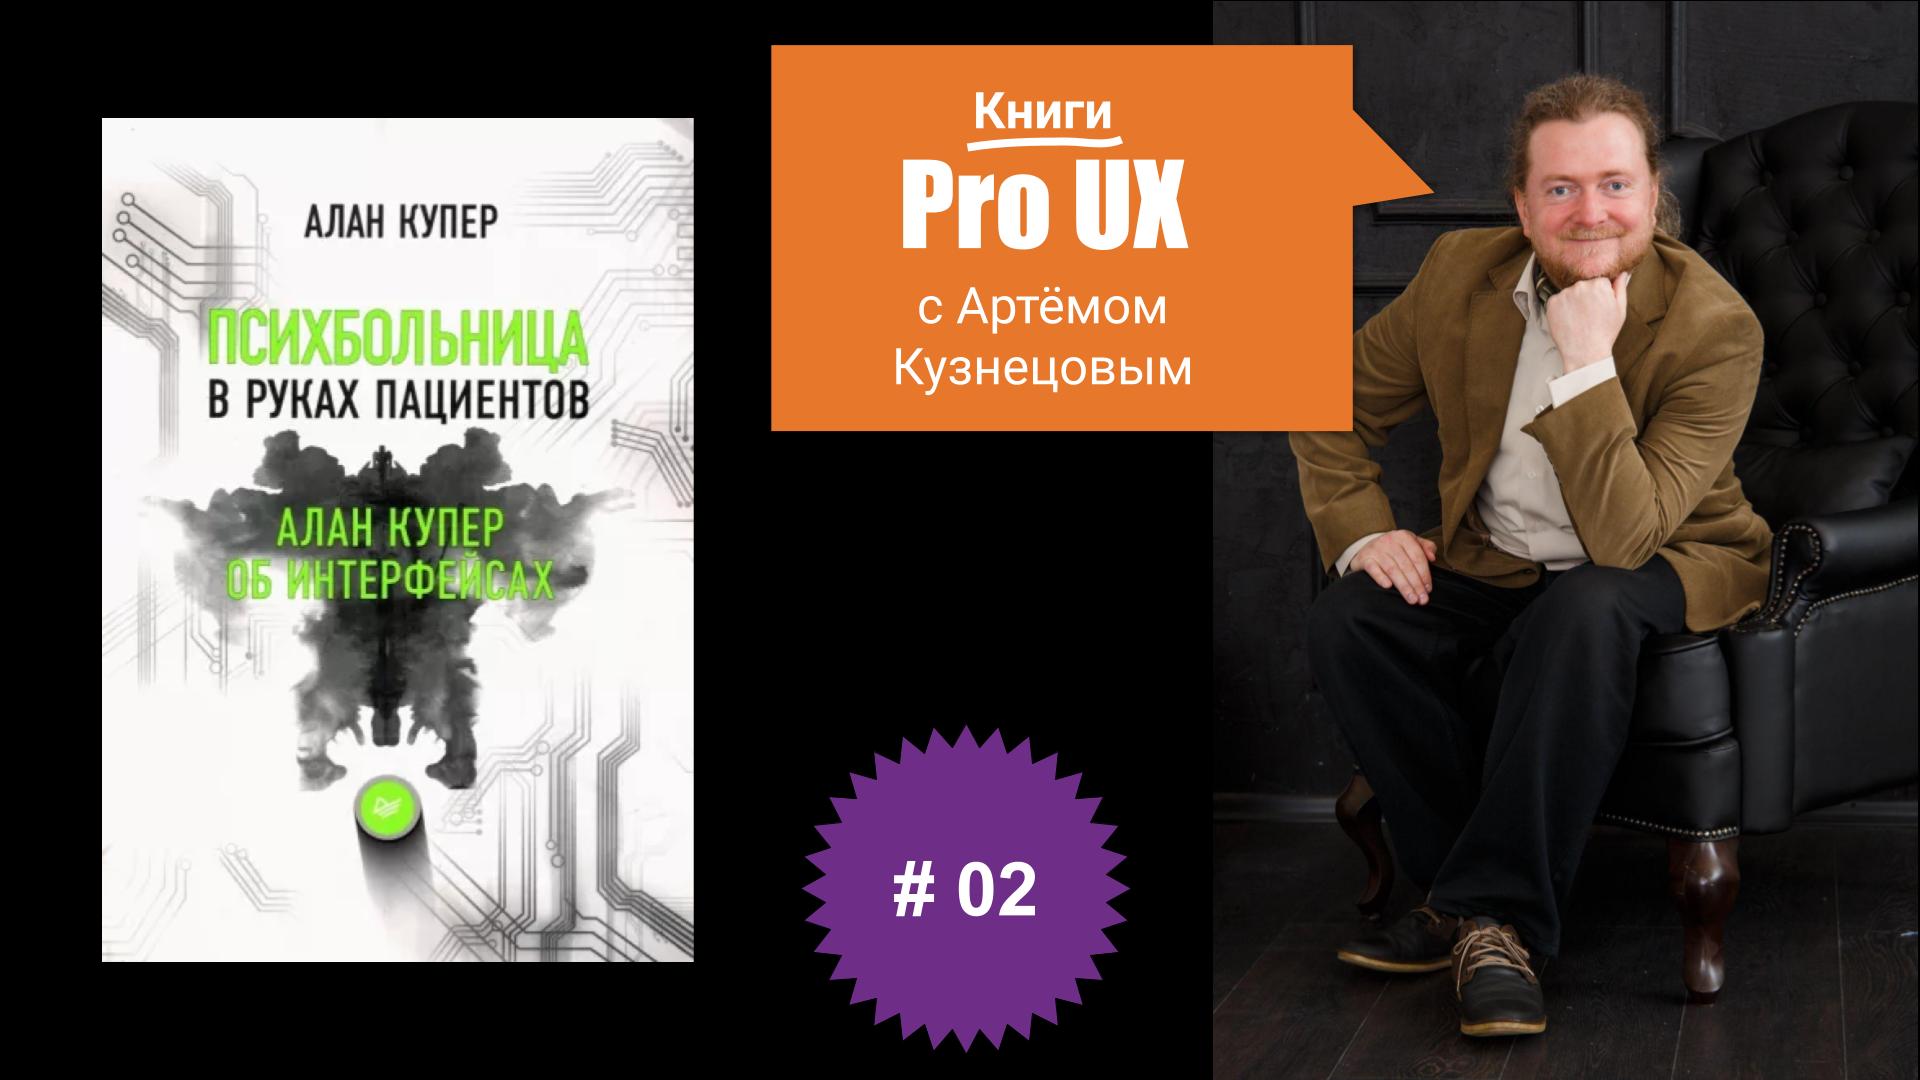 Книги Pro UX c Артёмом Кузнецовым #2 – Алан Купер “Психбольница в руках пациентов”.